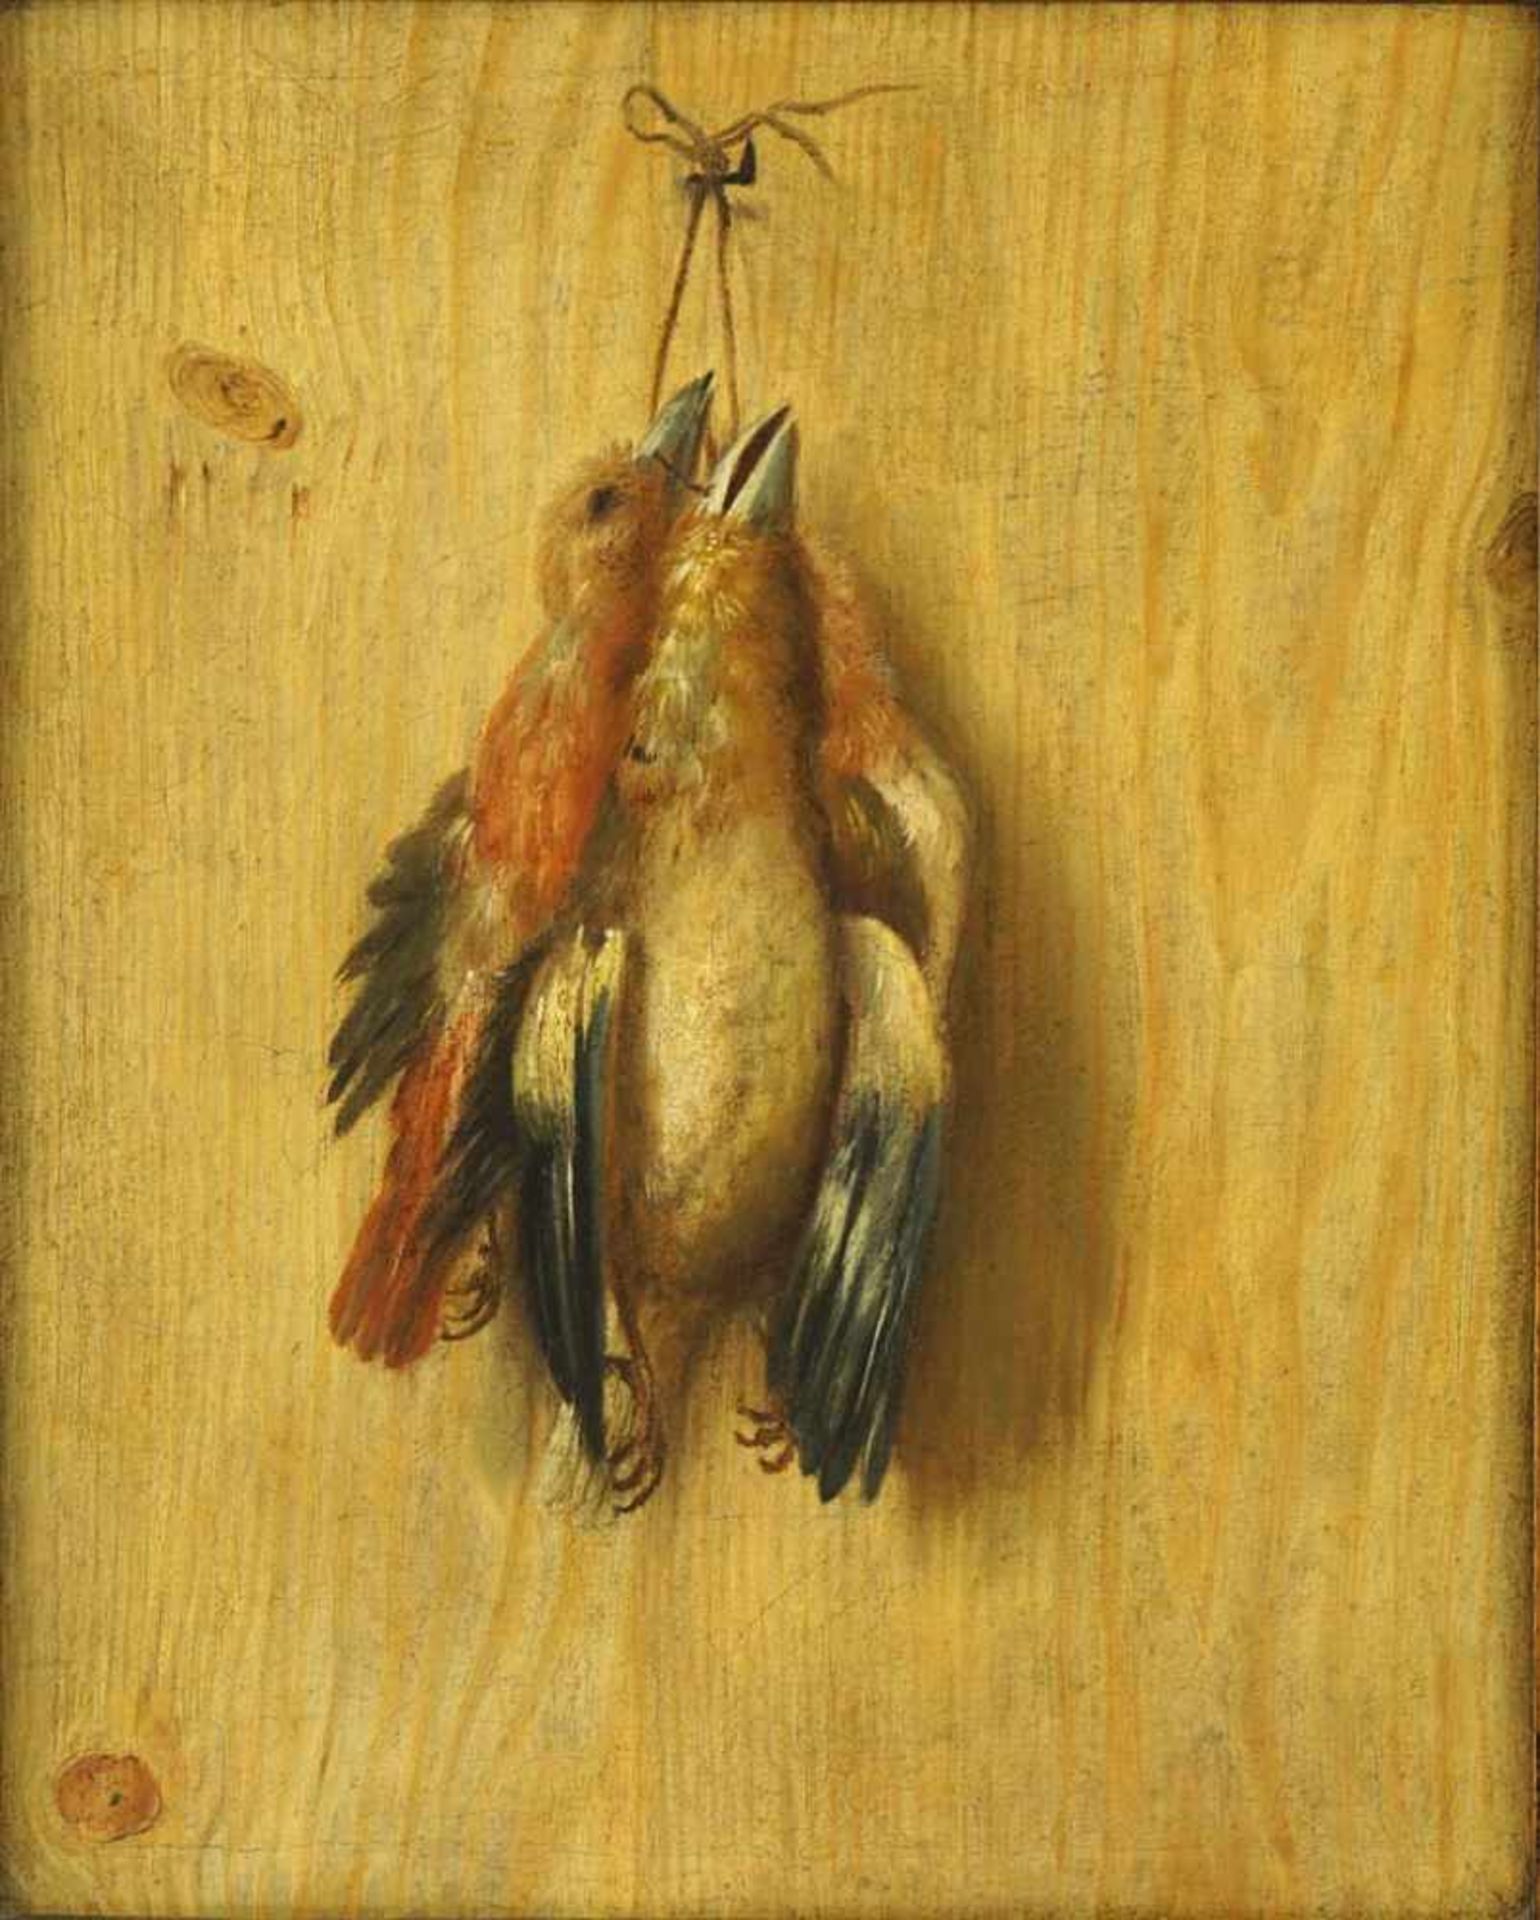 Maler des 19. Jh. Trompe l'oeil mit Nature morte: zwei Vögel am Haken auf Holzbrett. Öl/Lwd. 41,5